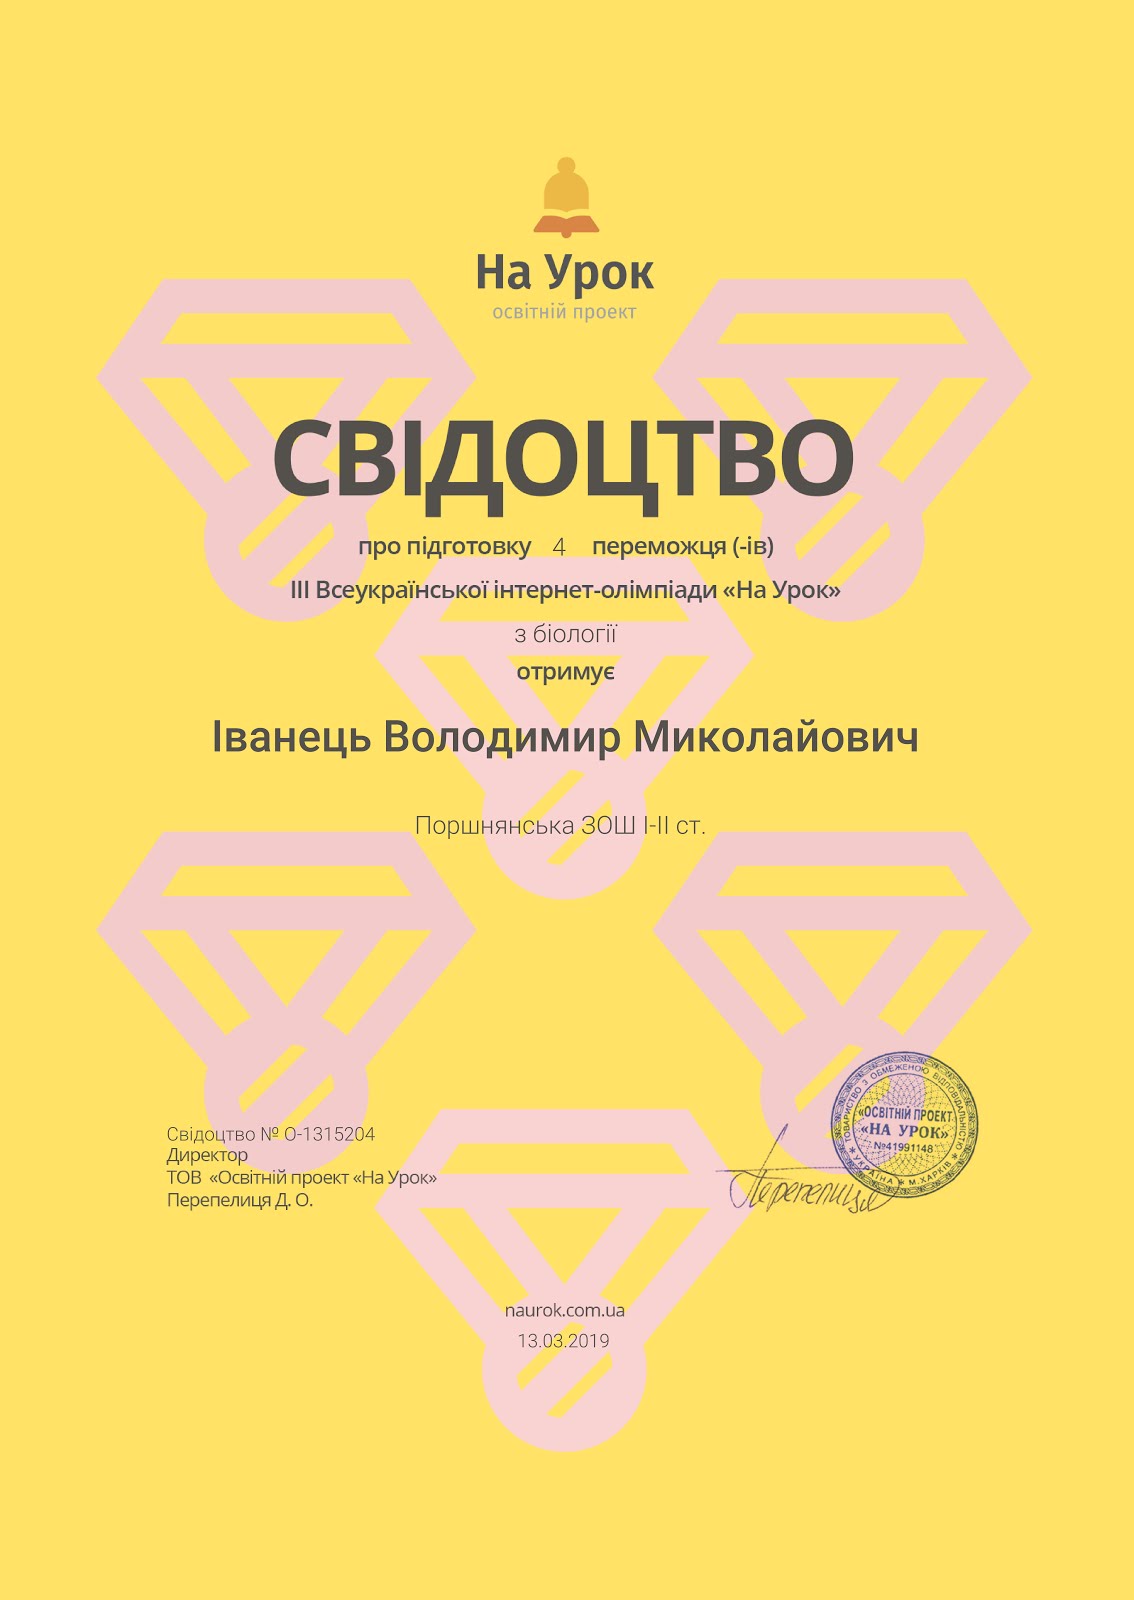 III Всеукраїнська інтернет - олімпіада з біології!